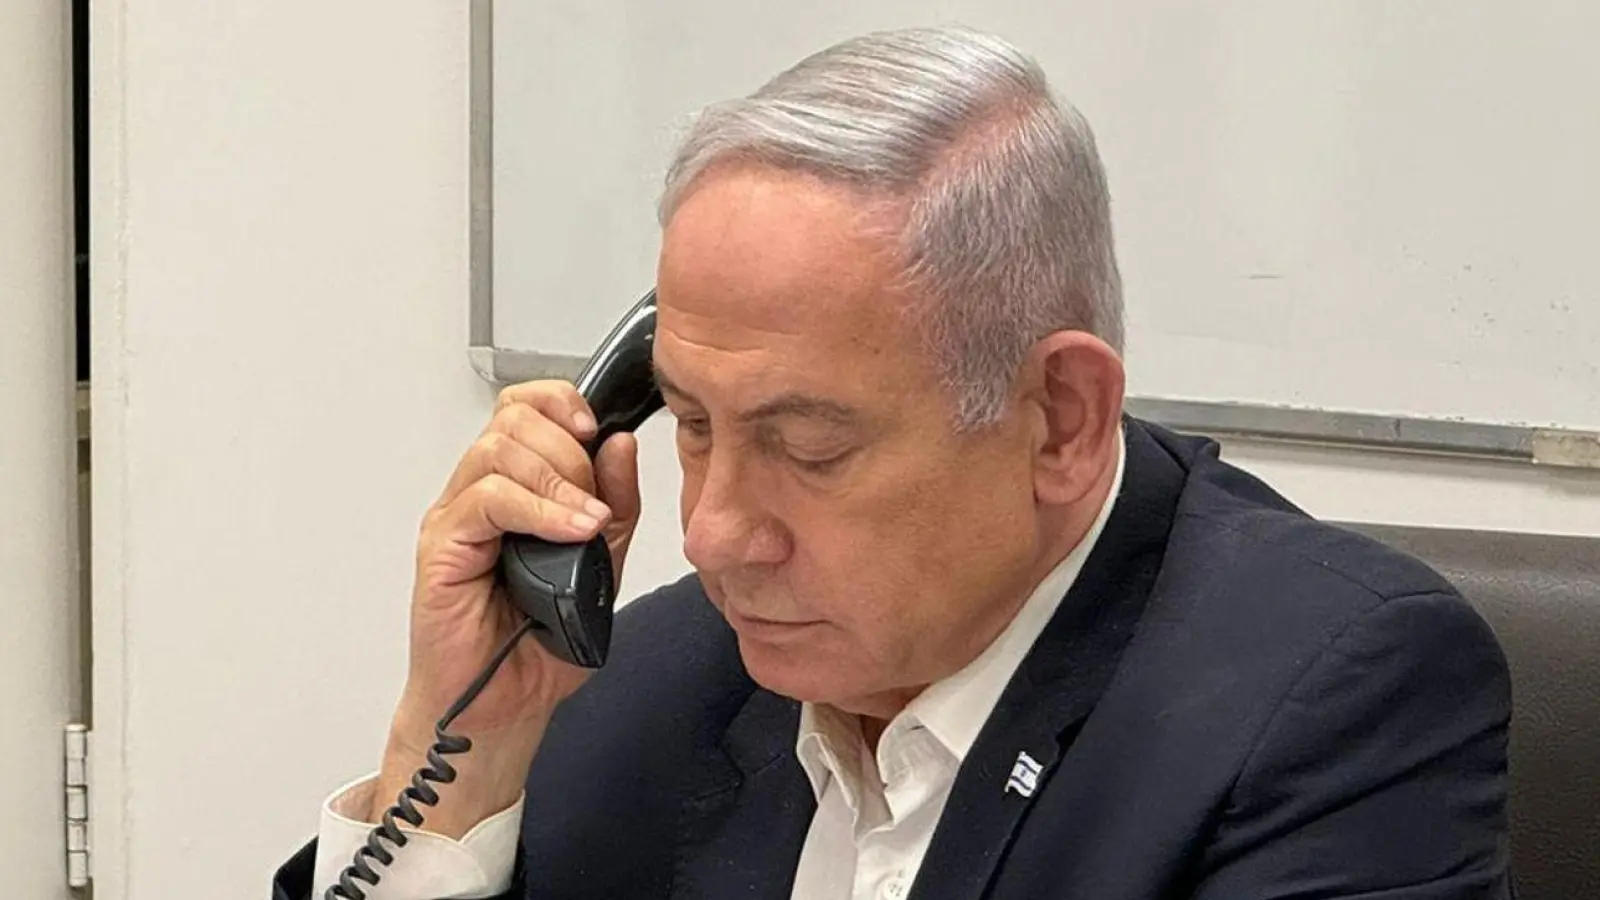 Der israelische Ministerpräsident Benjamin Netanjahu. (Foto: Government Press Office/XinHua/dpa)